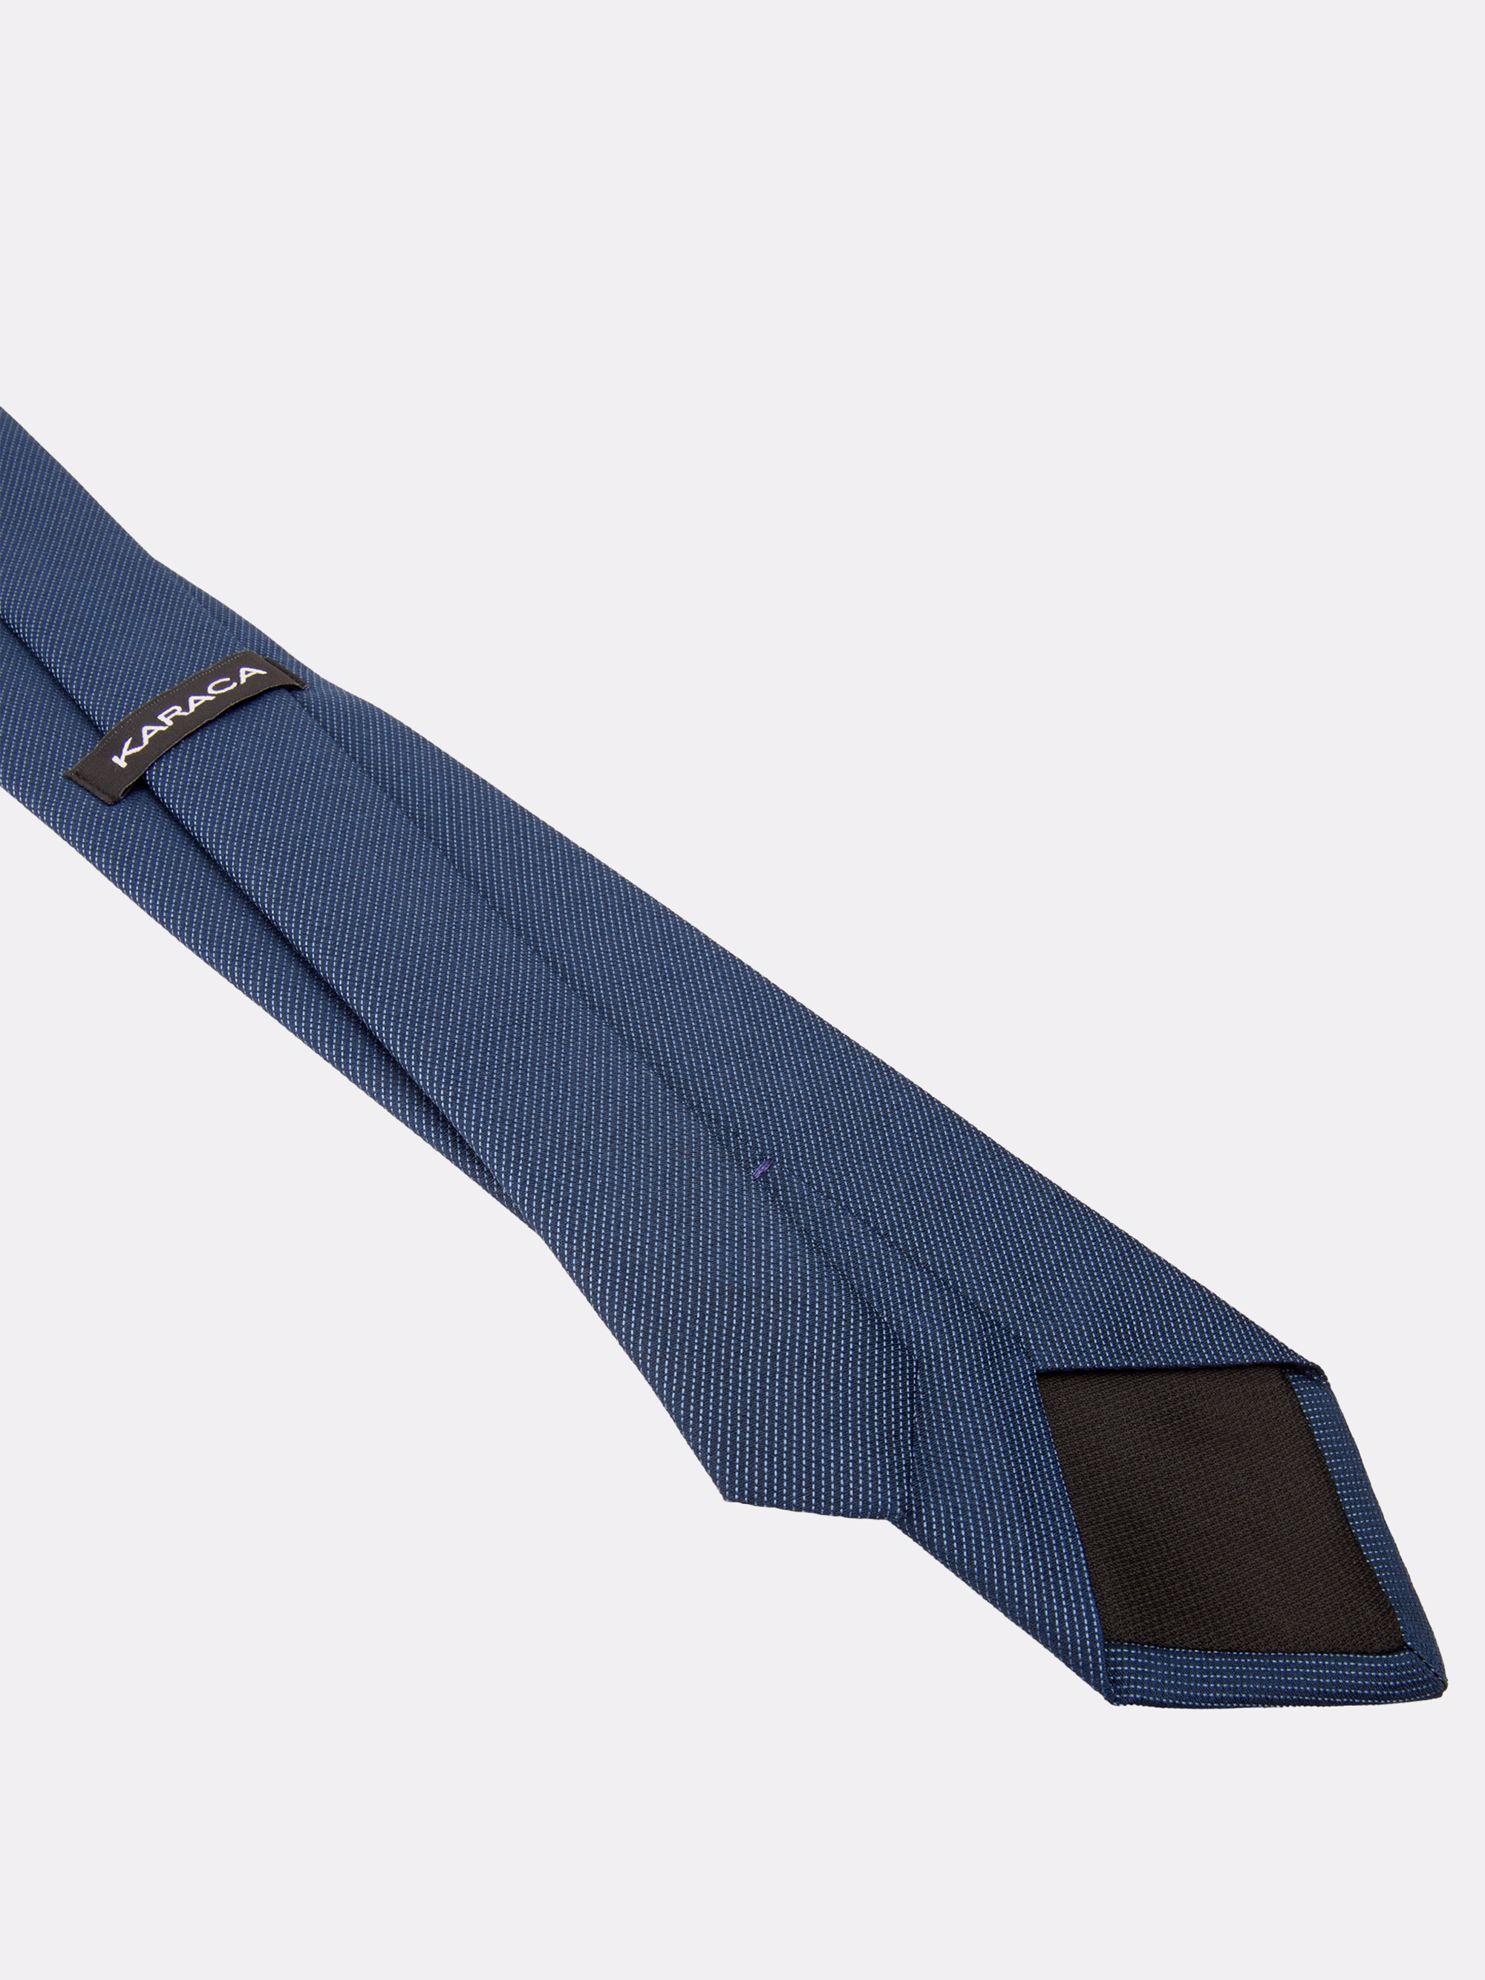 Karaca Erkek Kravat-Mavi. ürün görseli